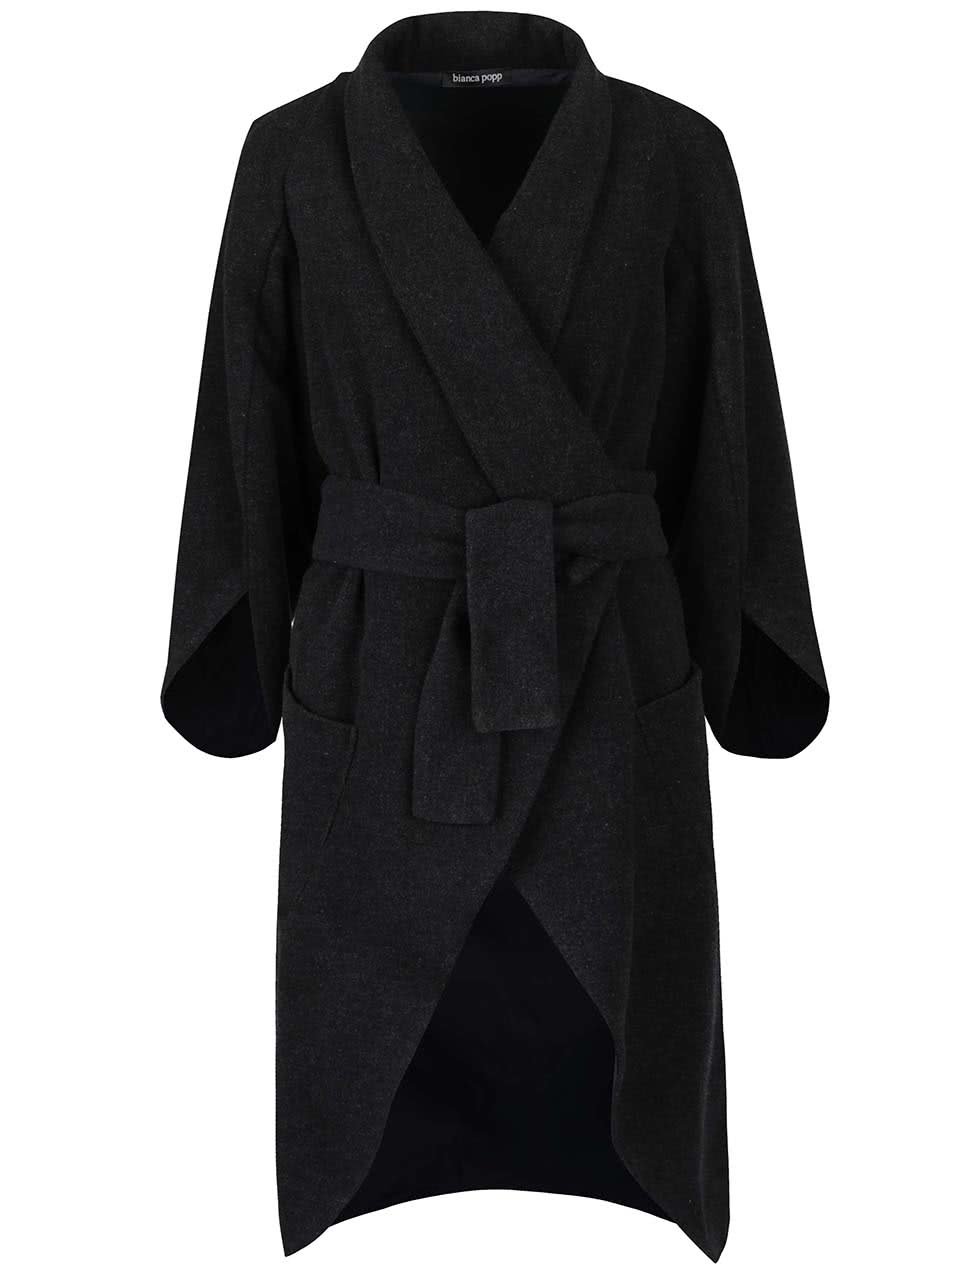 Tmavě šedý vlněný kabát s kimonovými rukávy a zavazováním v pase Bianca Popp